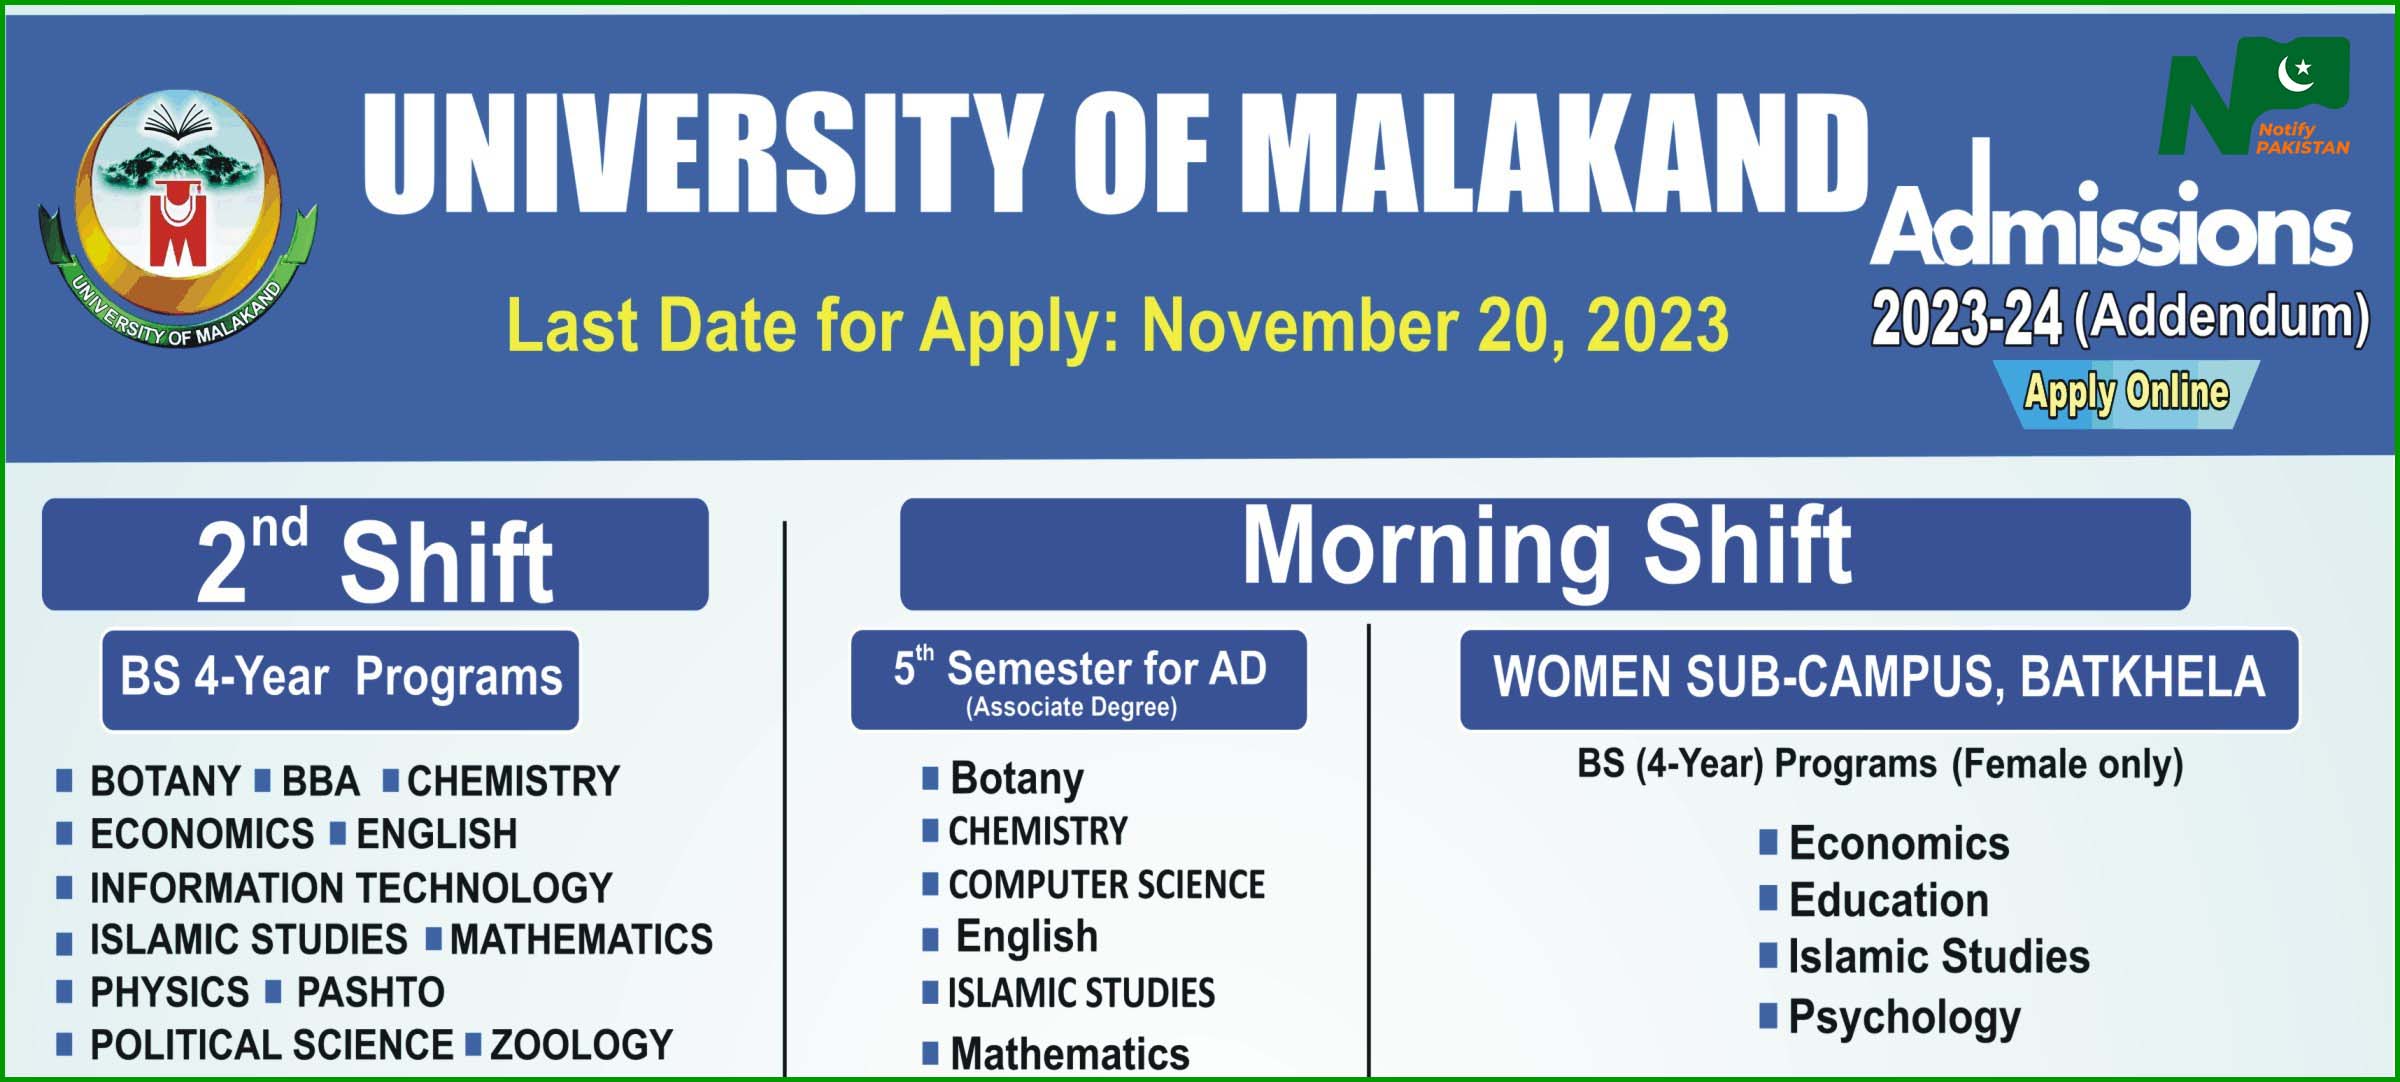 University Of Malakand (UOM) Admission 2023-24